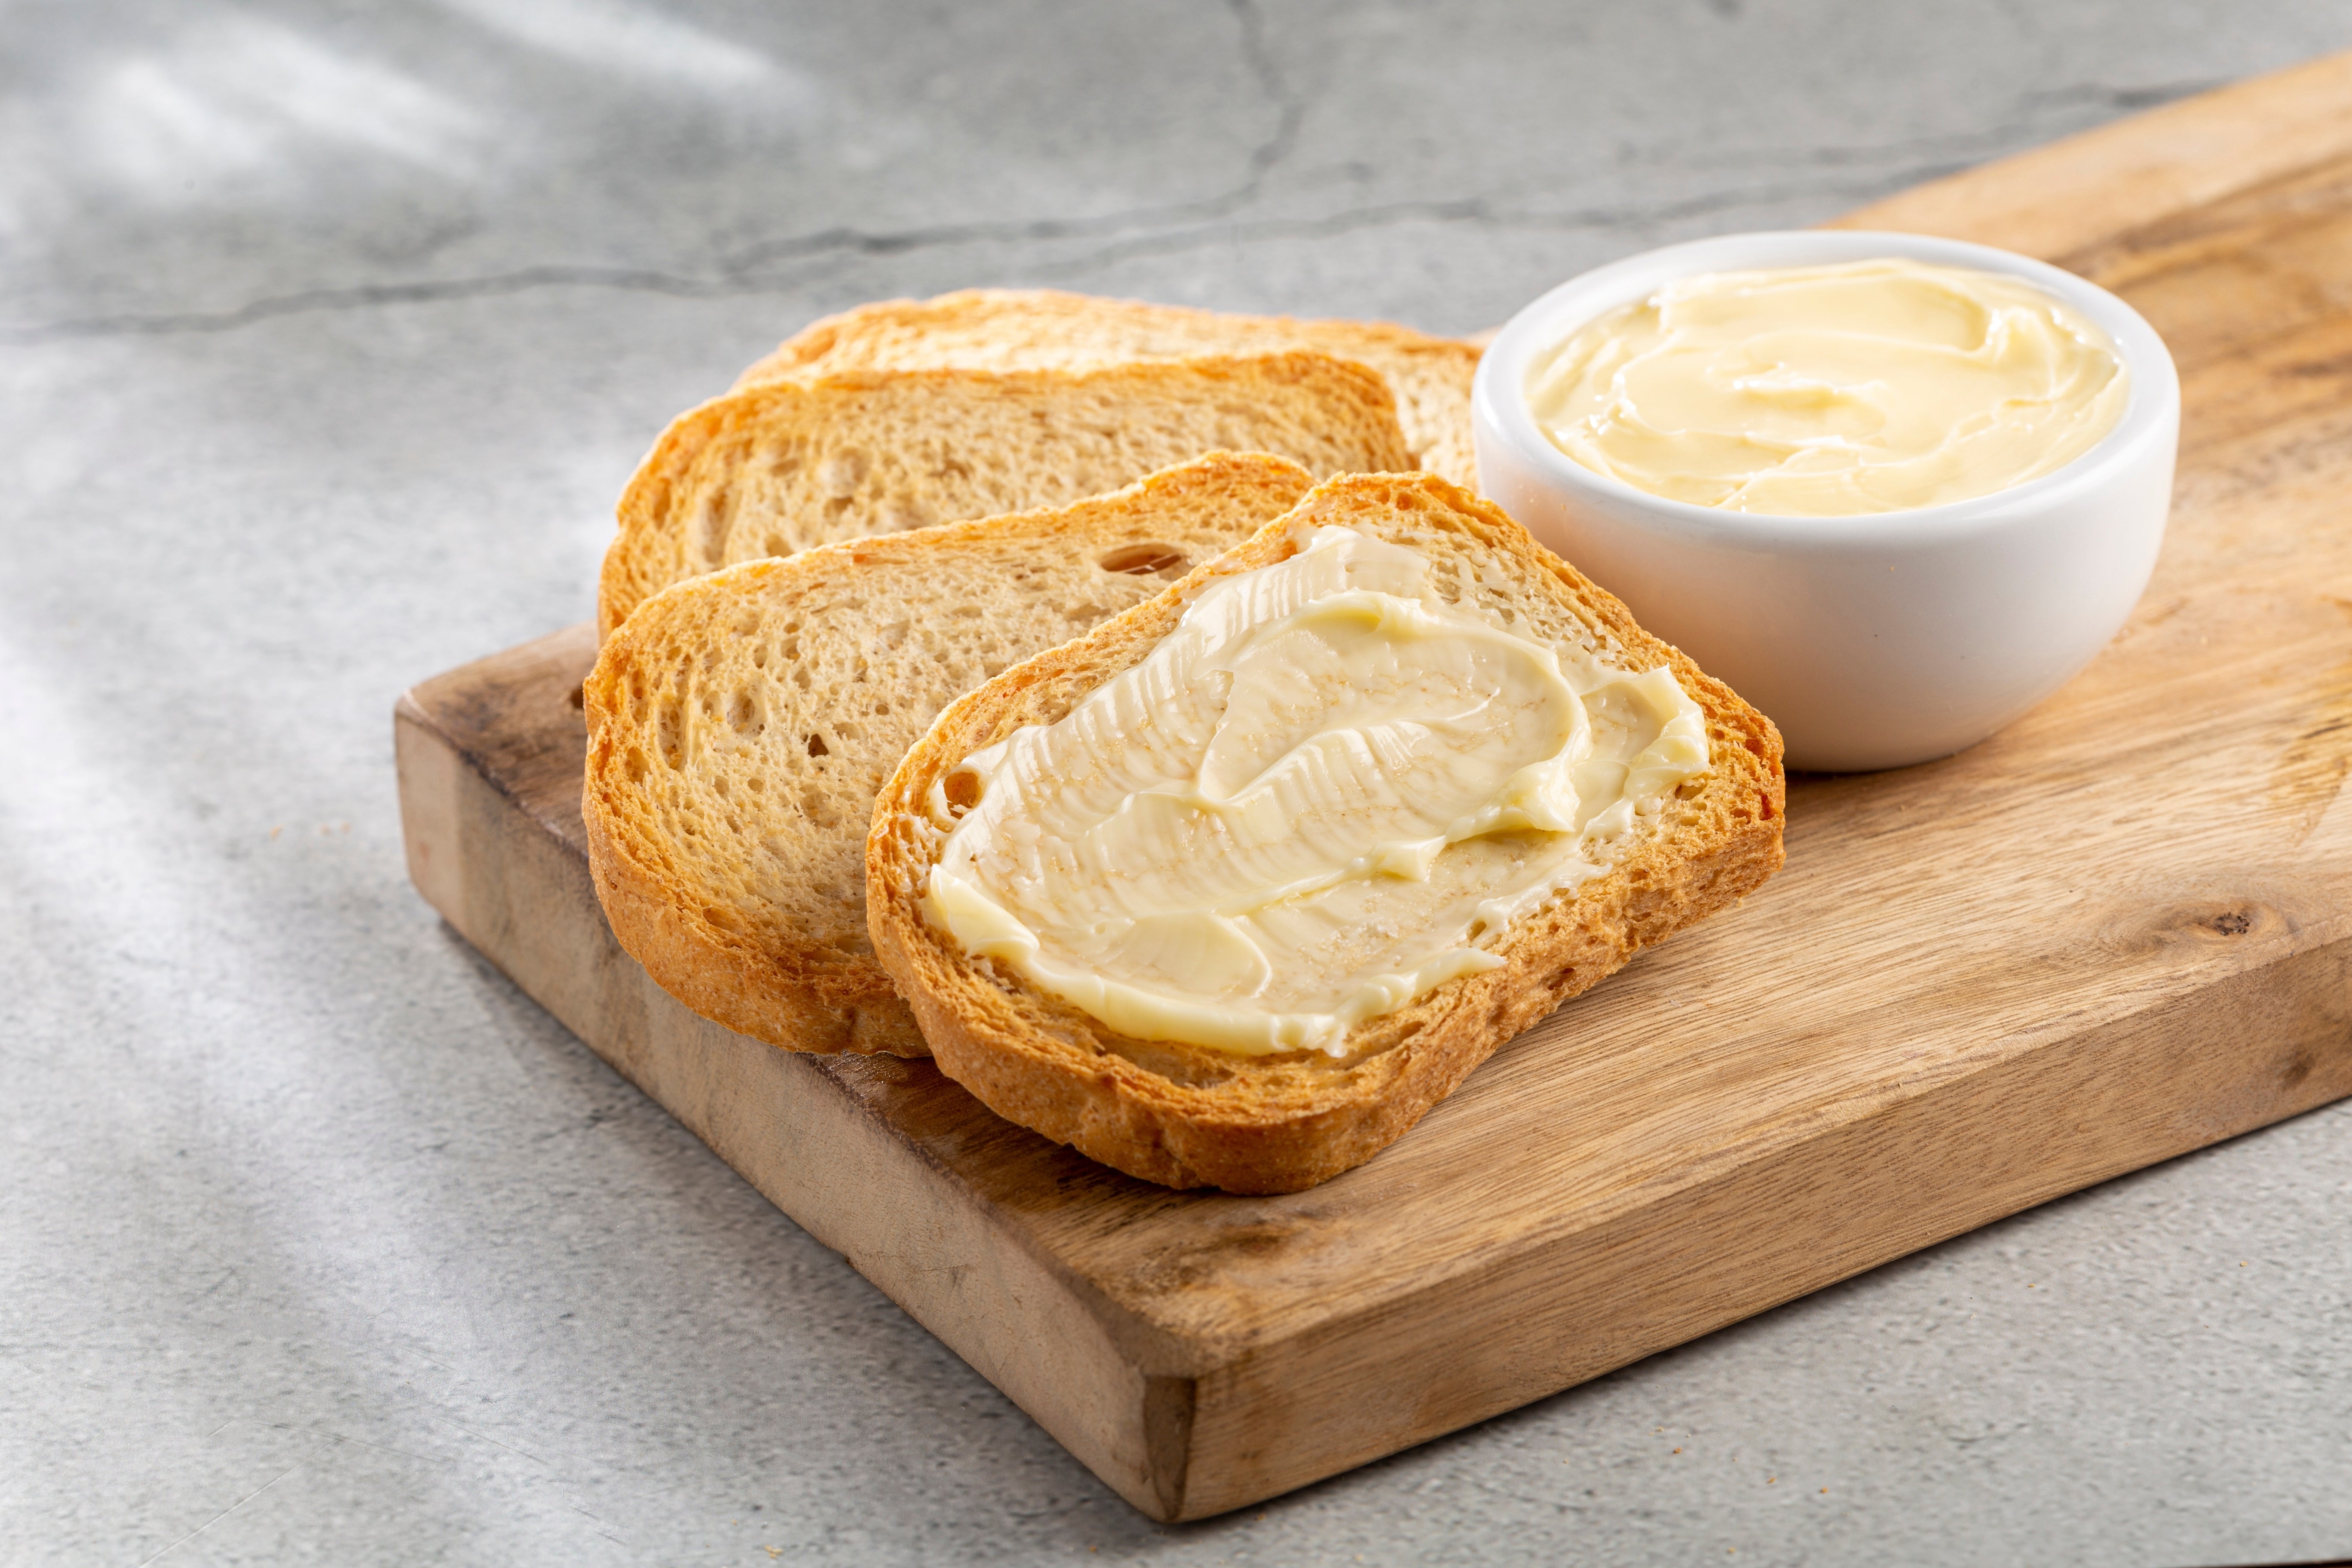 Food processor homemade butter